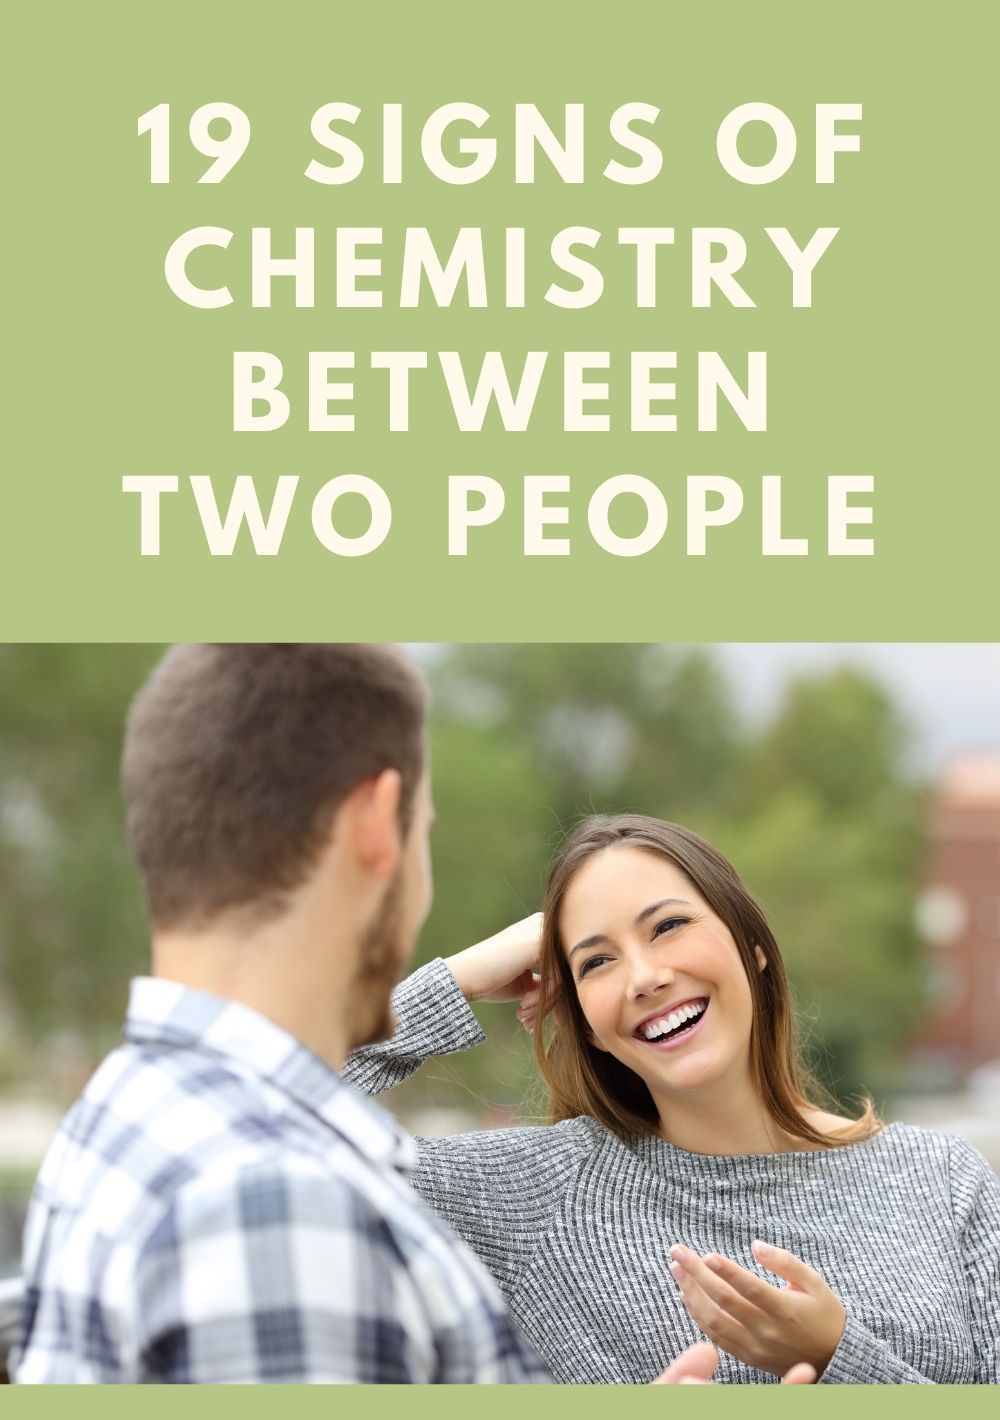 두 사람 사이의 19가지 화학 신호